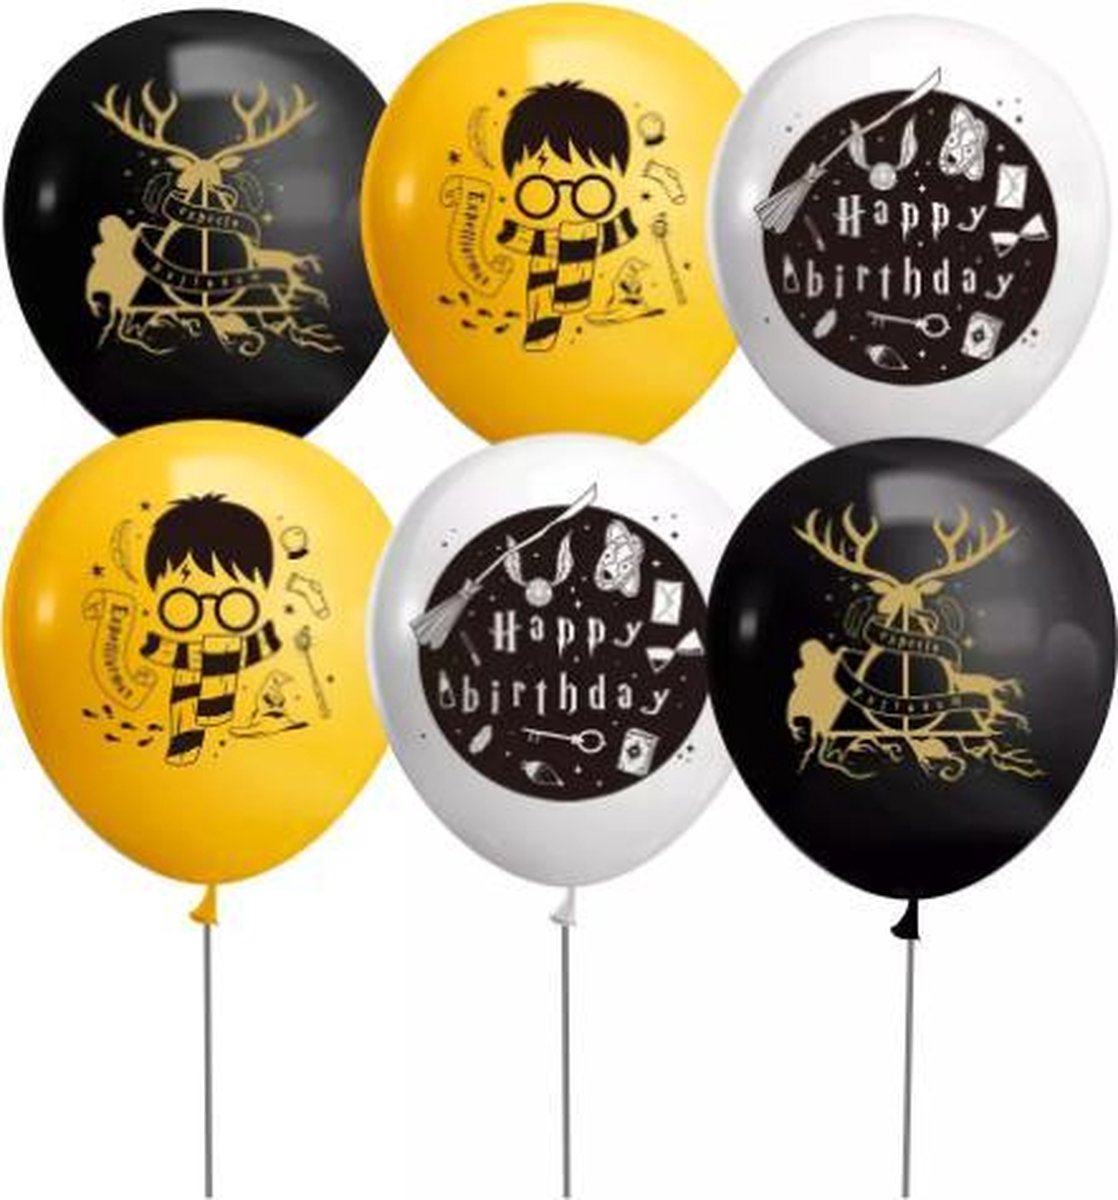 ProductGoods - 10x Harry Potter Ballons Anniversaire - Anniversaire Enfants  - Ballons